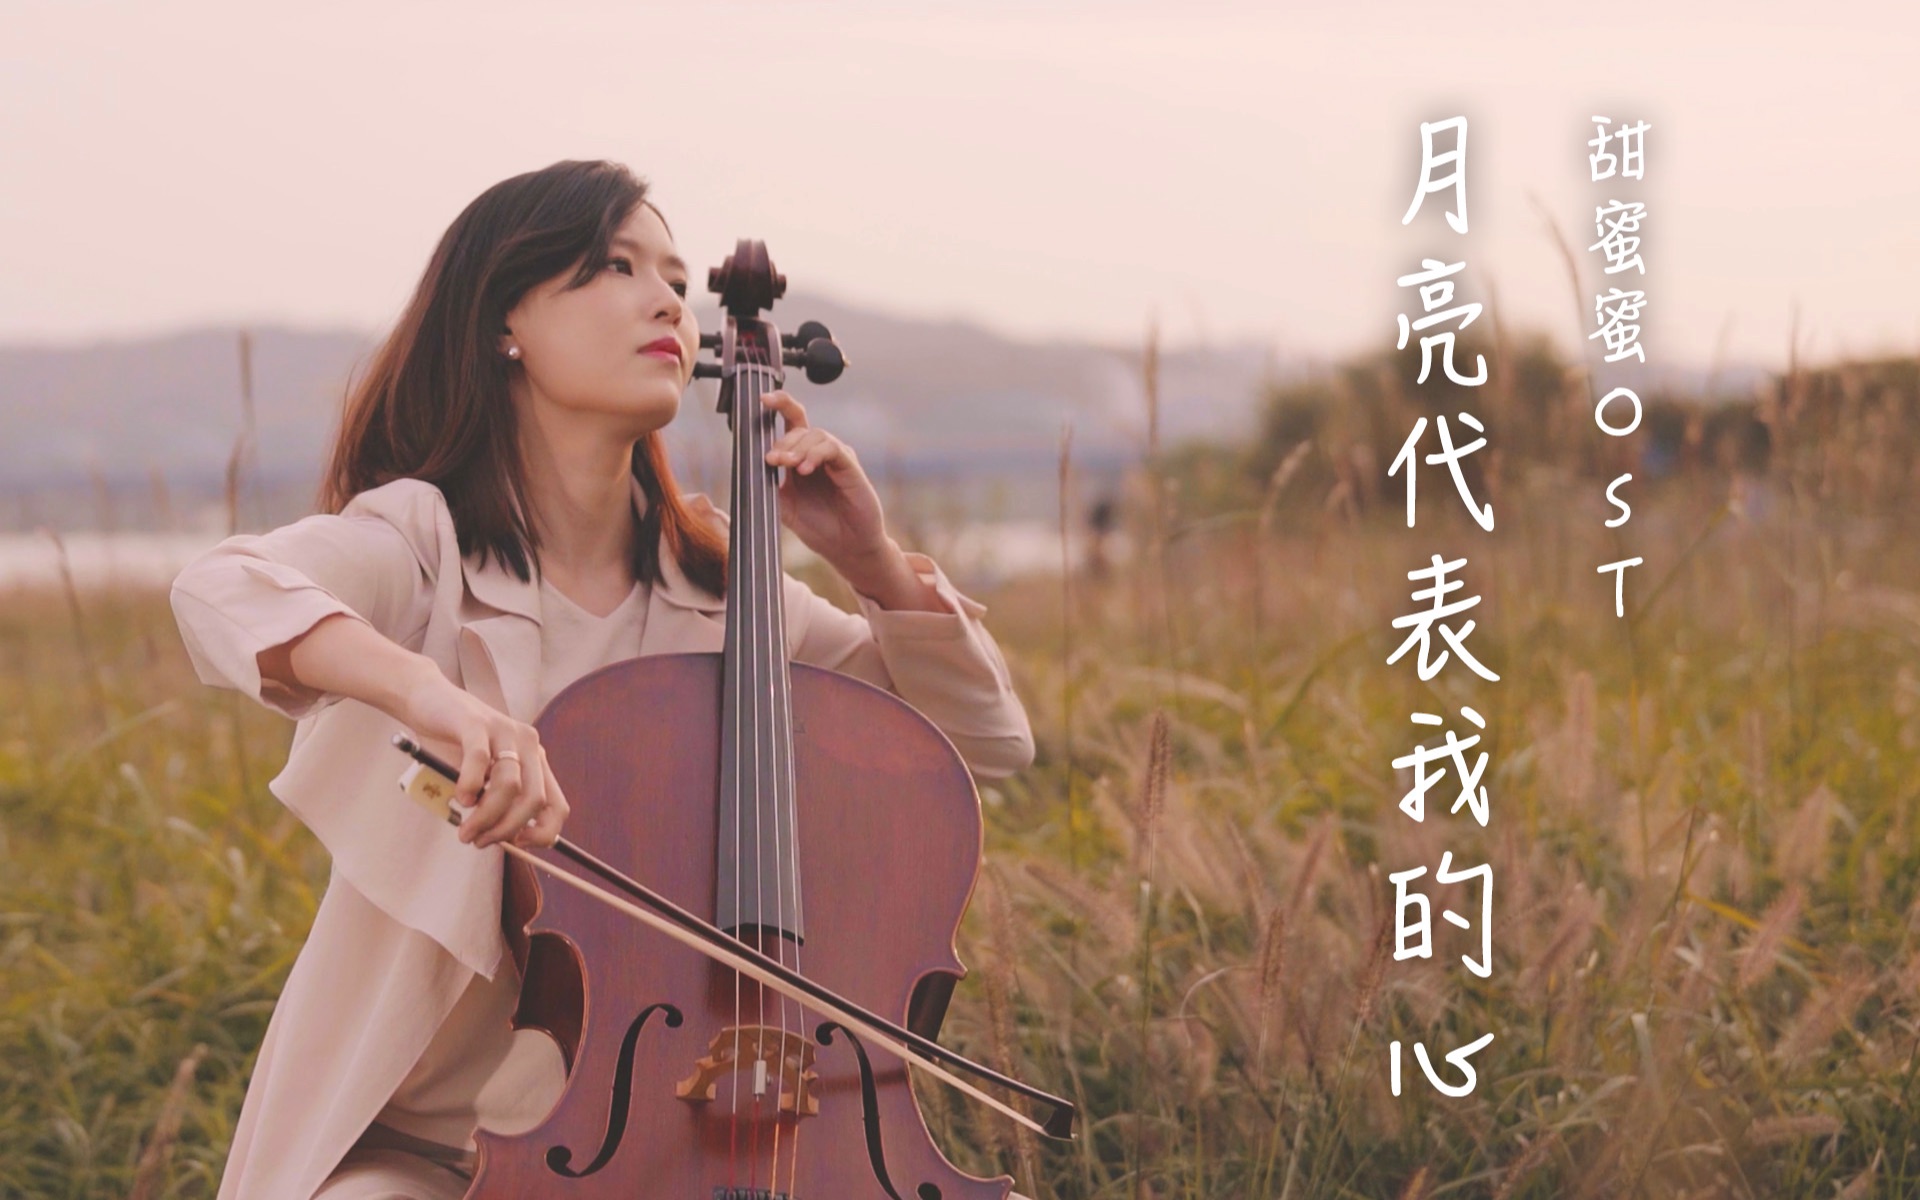 【大提琴】甜蜜蜜ost《月亮代表我的心》by cellodeck/提琴夫人